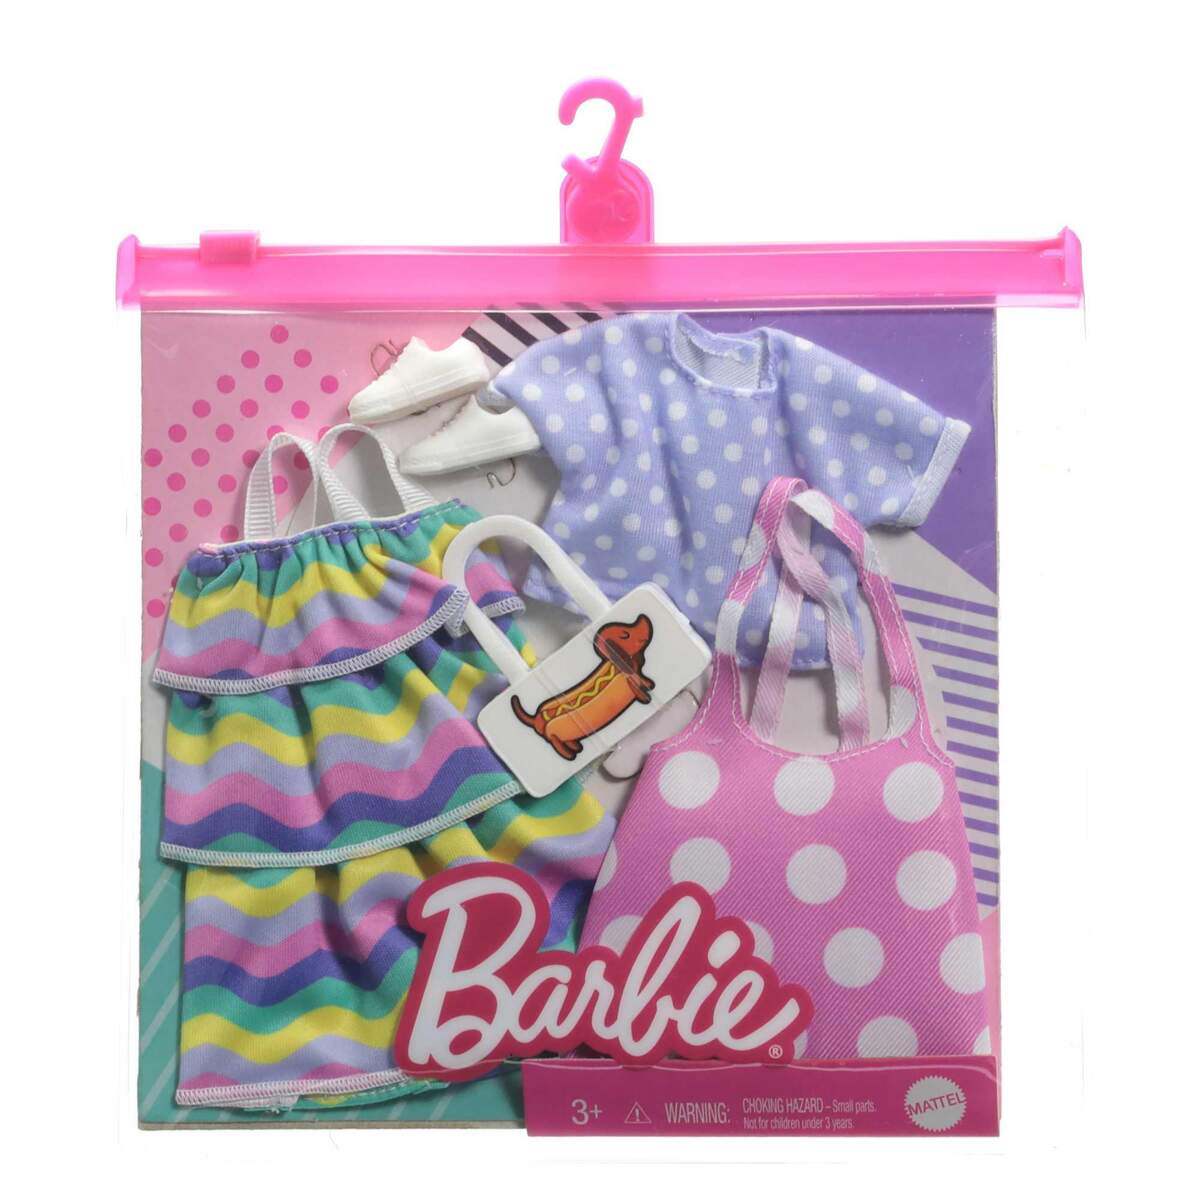 Barbie Moden 2 Outfits und 2 Accessoires für die Barbie Puppe, 1 Packung, 7-fach sortiert